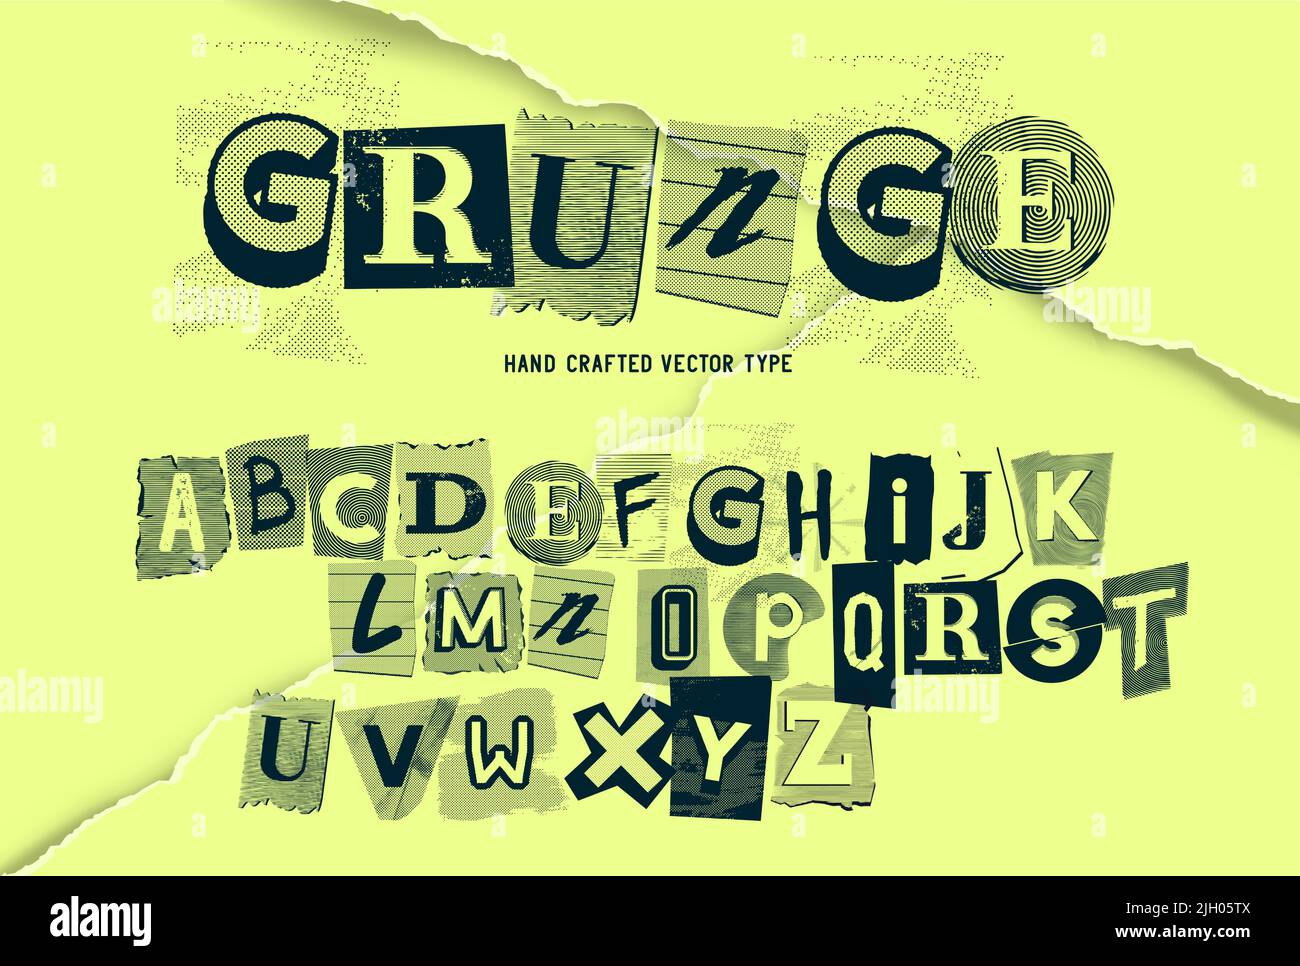 Un insieme di lettere vecchie e usurate dell'alfabeto grunge. Illustrazione del tipo di vettore Illustrazione Vettoriale